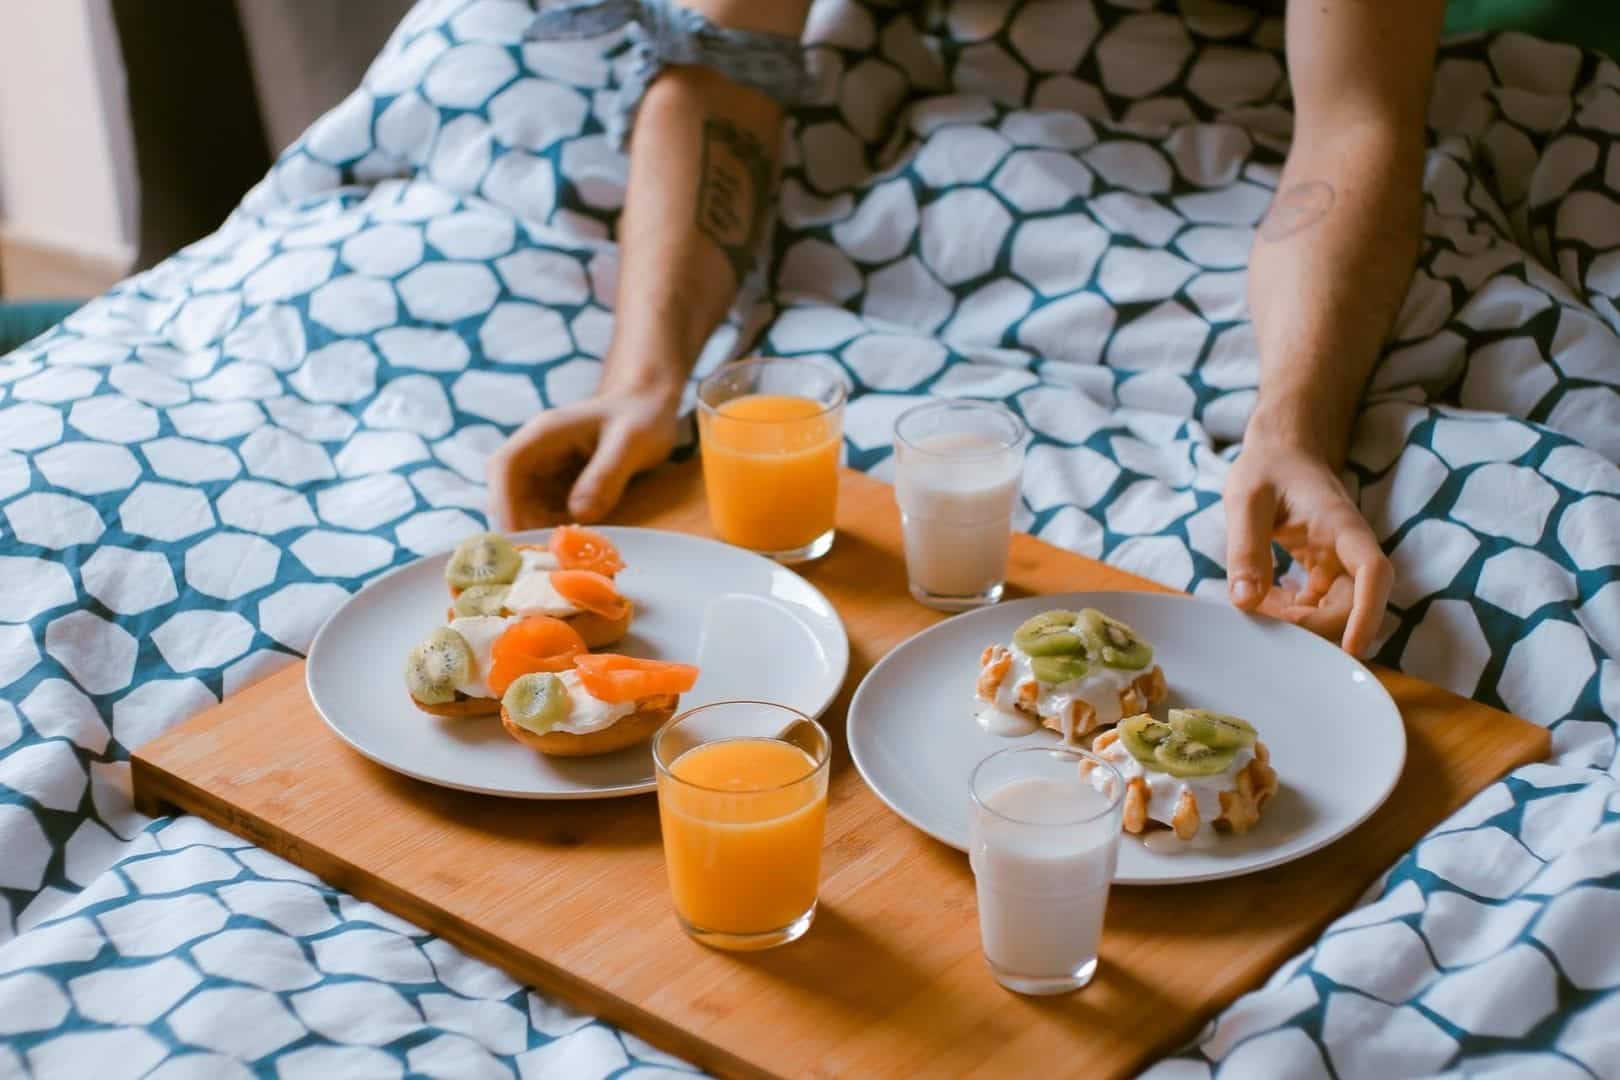 Café da manhã na cama- Dicas e ideias para você arrasar na surpresa